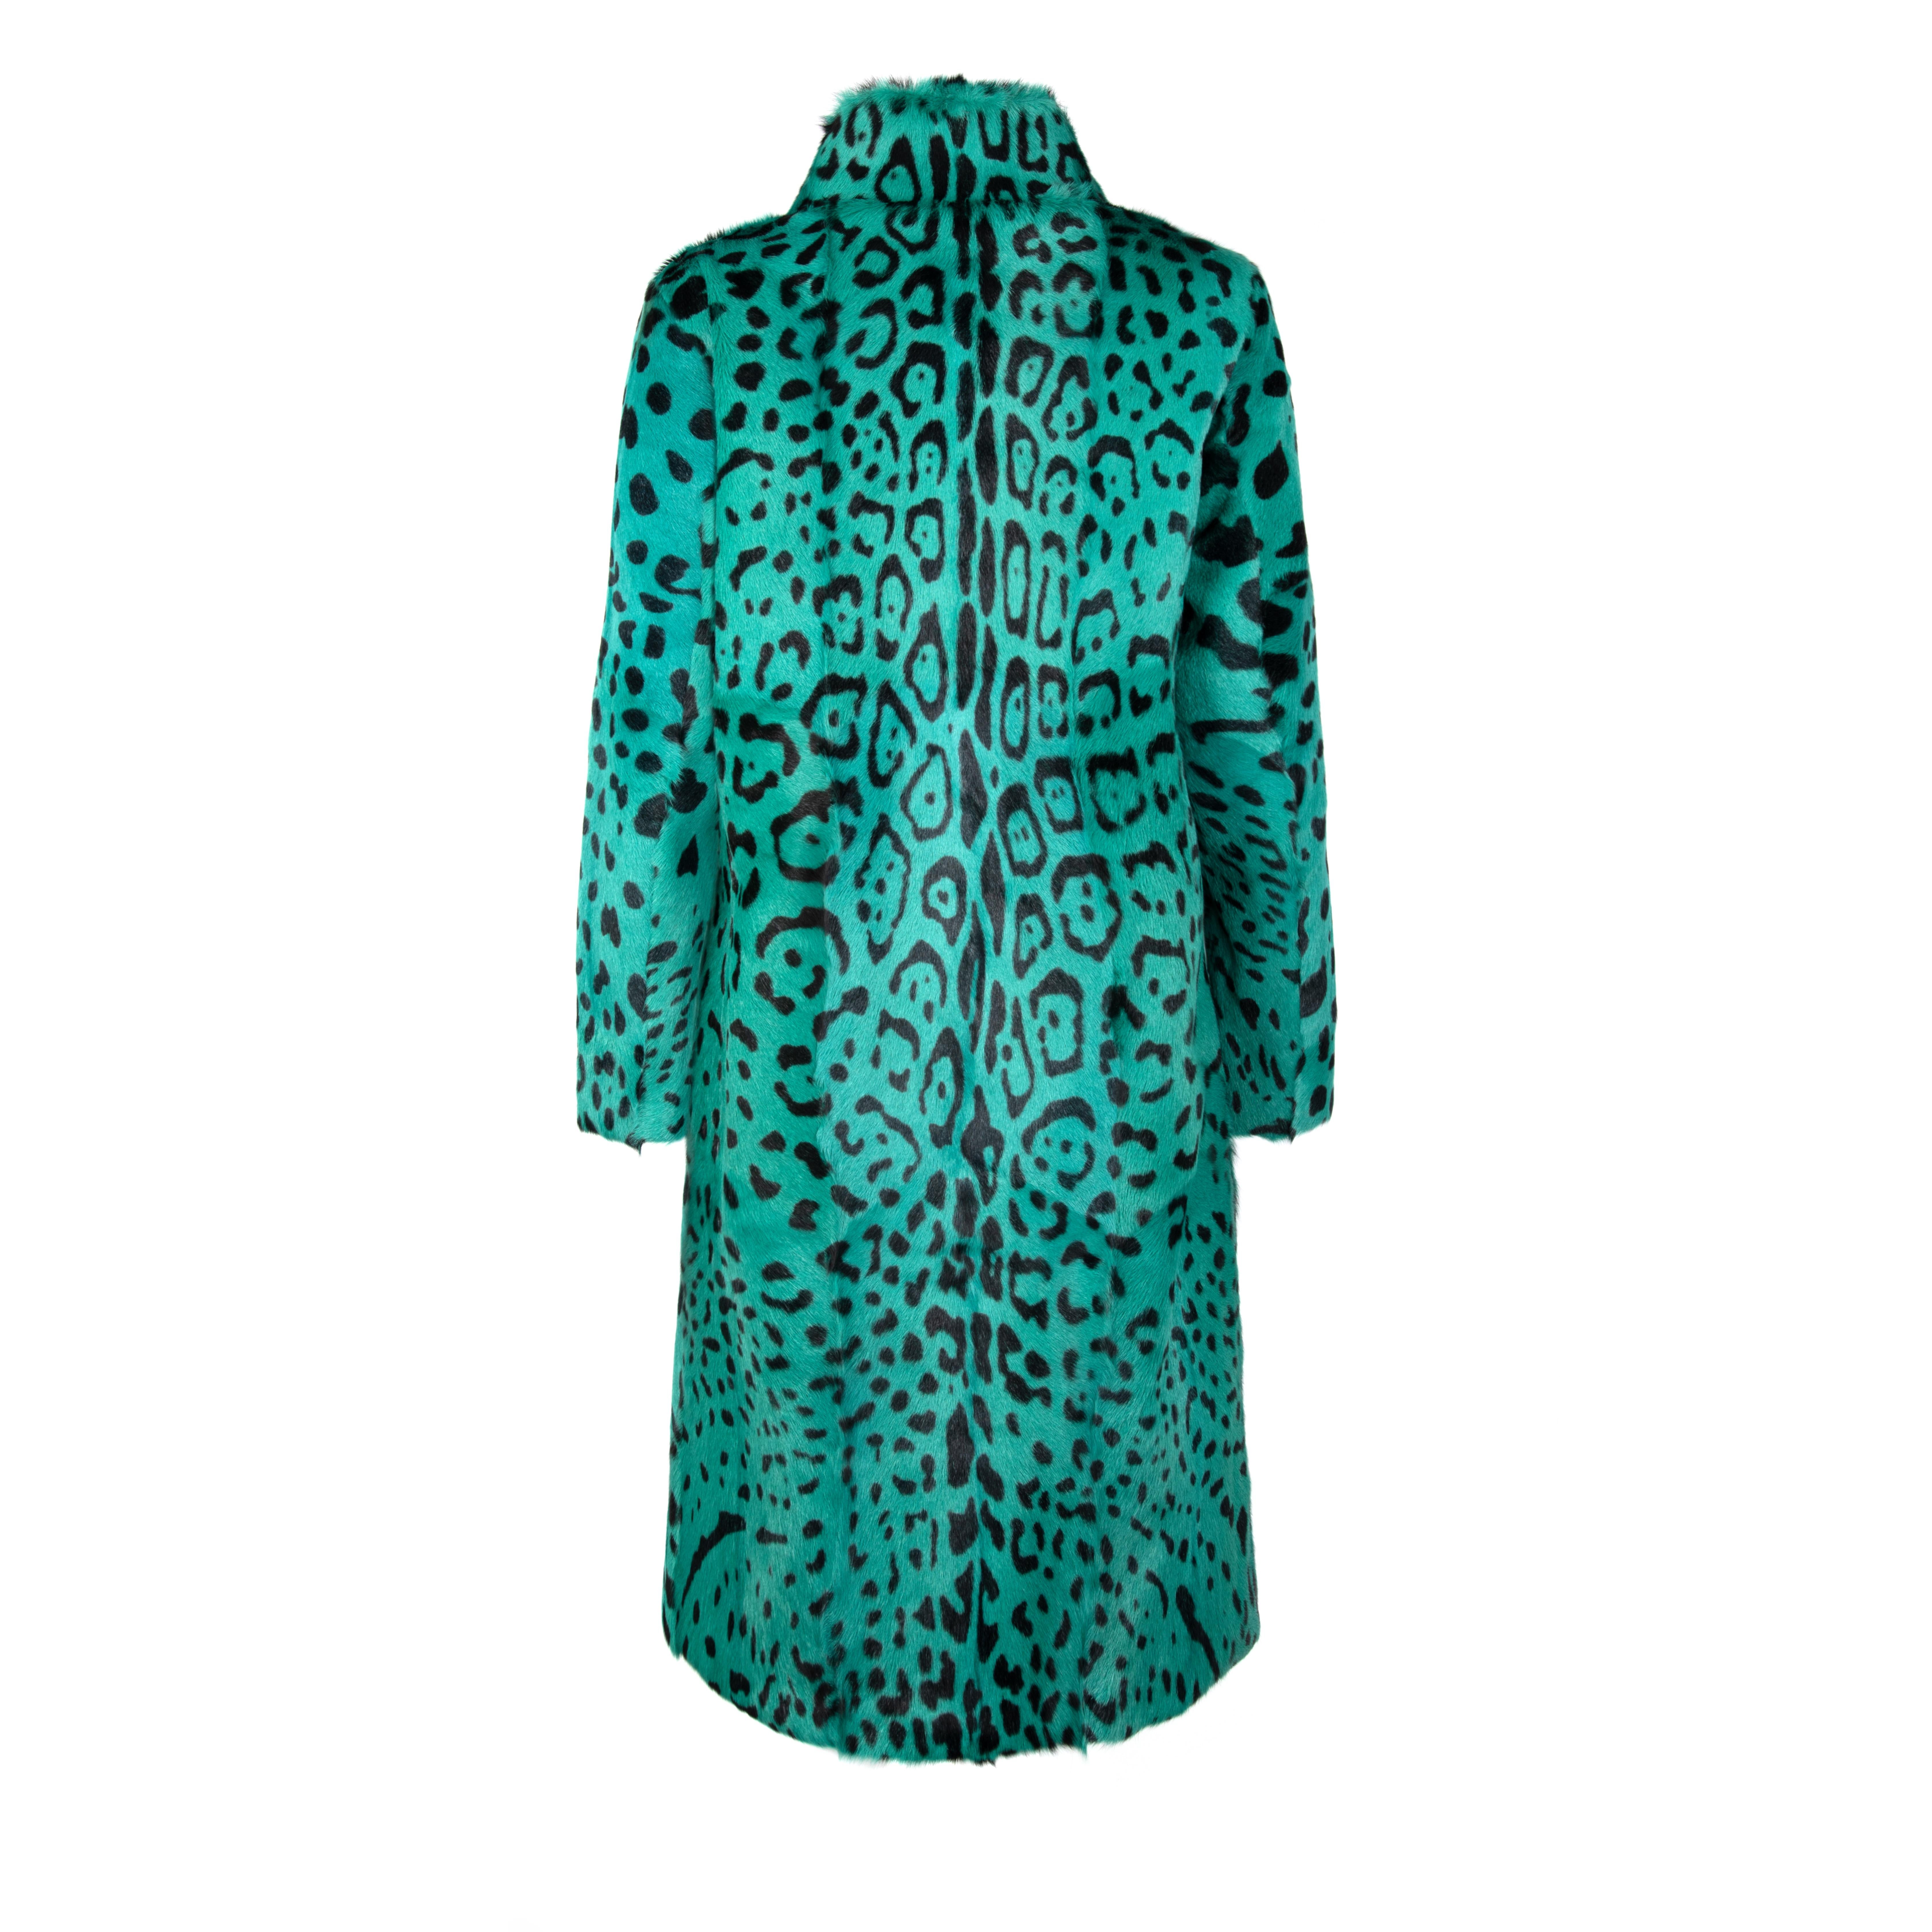 Verheyen London Mantel aus Ziegenhaar mit hohem Kragen und grünem Leopardenmuster Größe Uk 12

Dieser Mantel mit Leopardenmuster ist der Klassiker von Verheyen London für mühelosen Stil und Glamour.   Verheyen London ist eine Luxusmarke, die sich